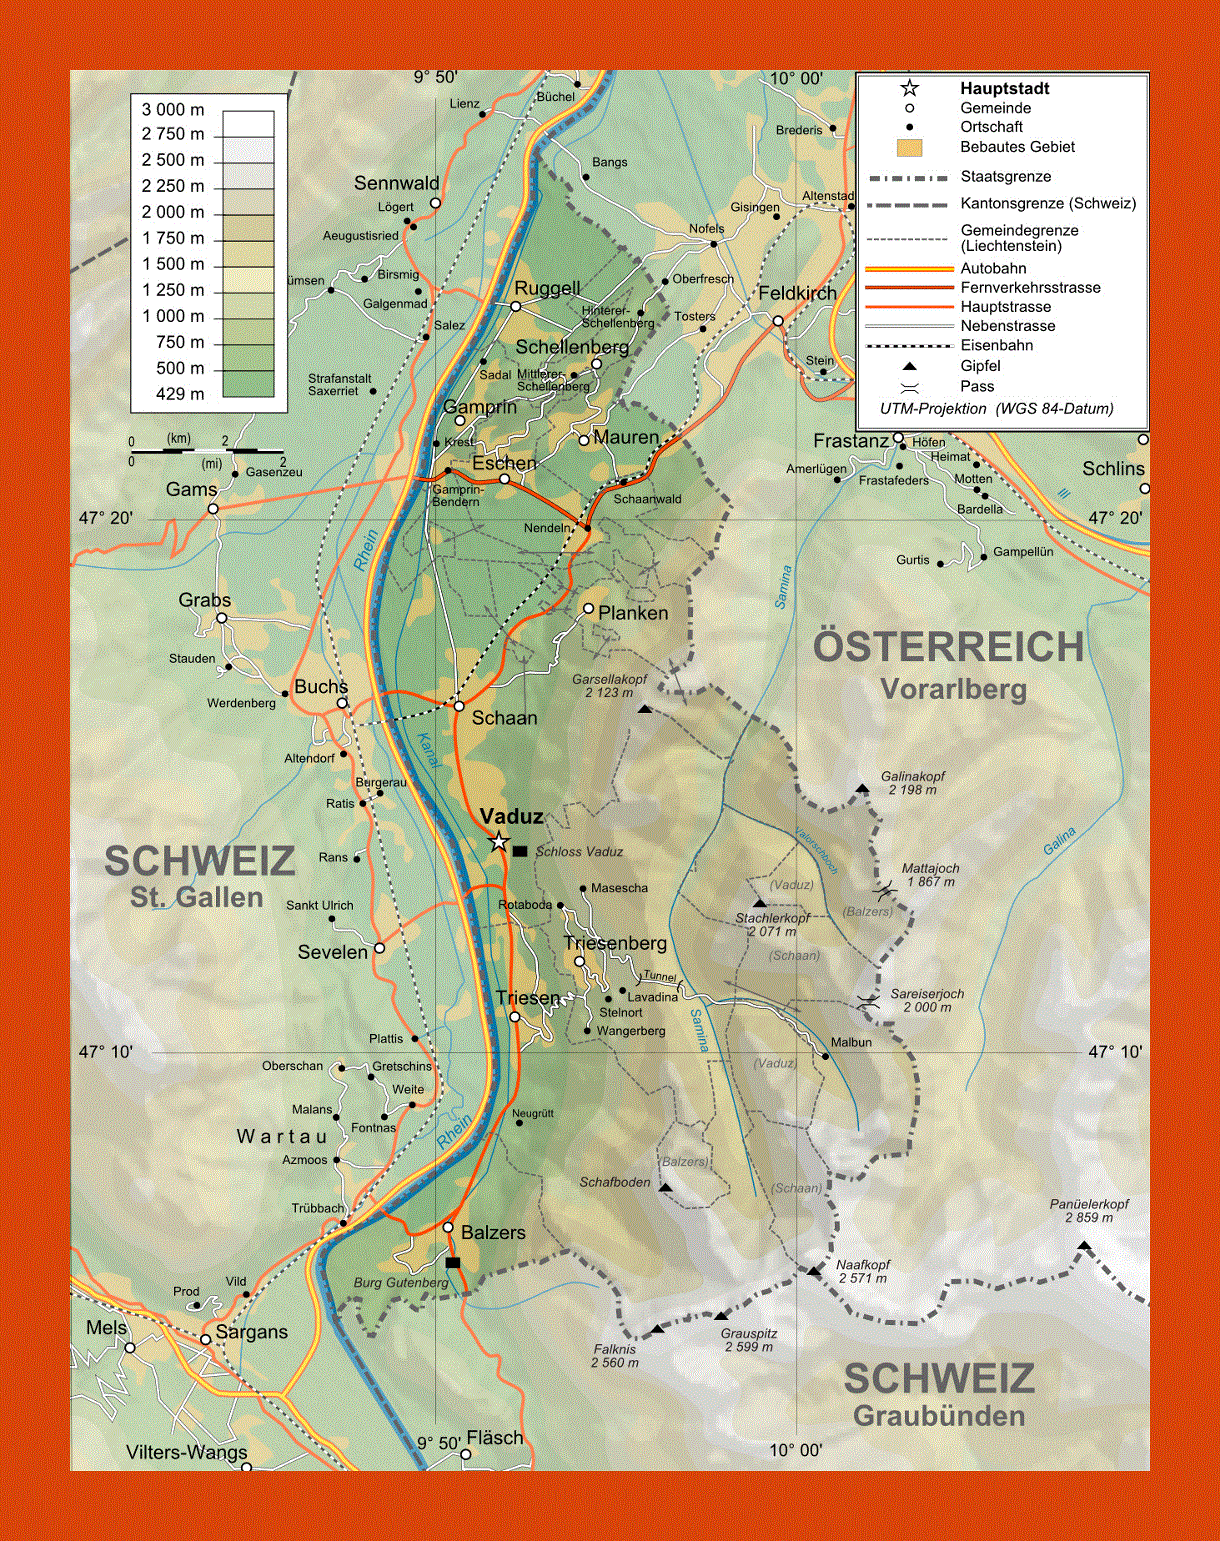 Physical map of Liechtenstein